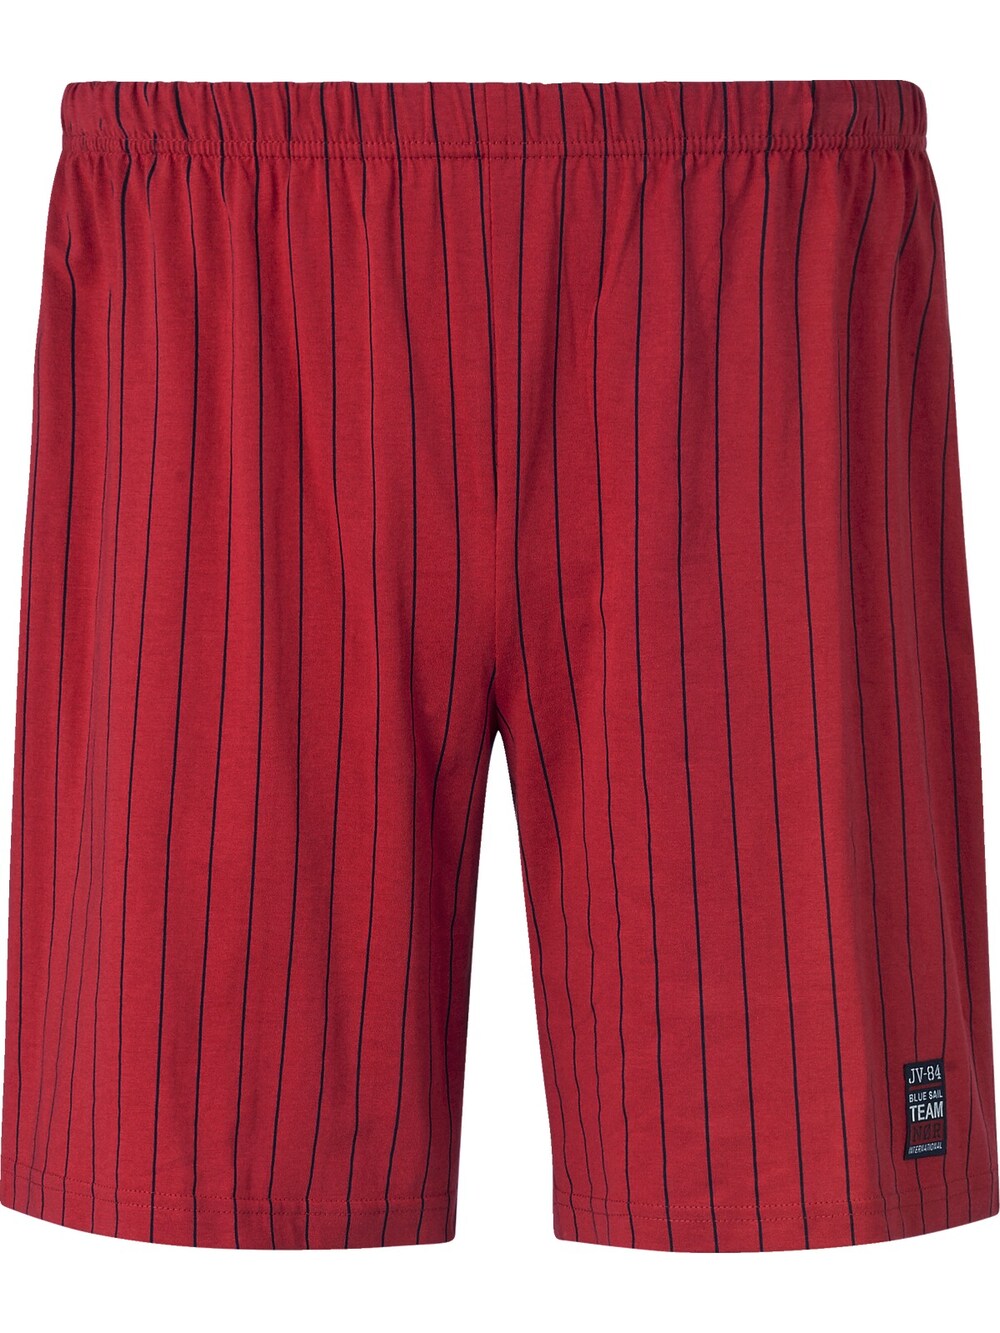 Пижамные штаны Jan Vanderstorm Baro, красный 5pcs bmp390 baro